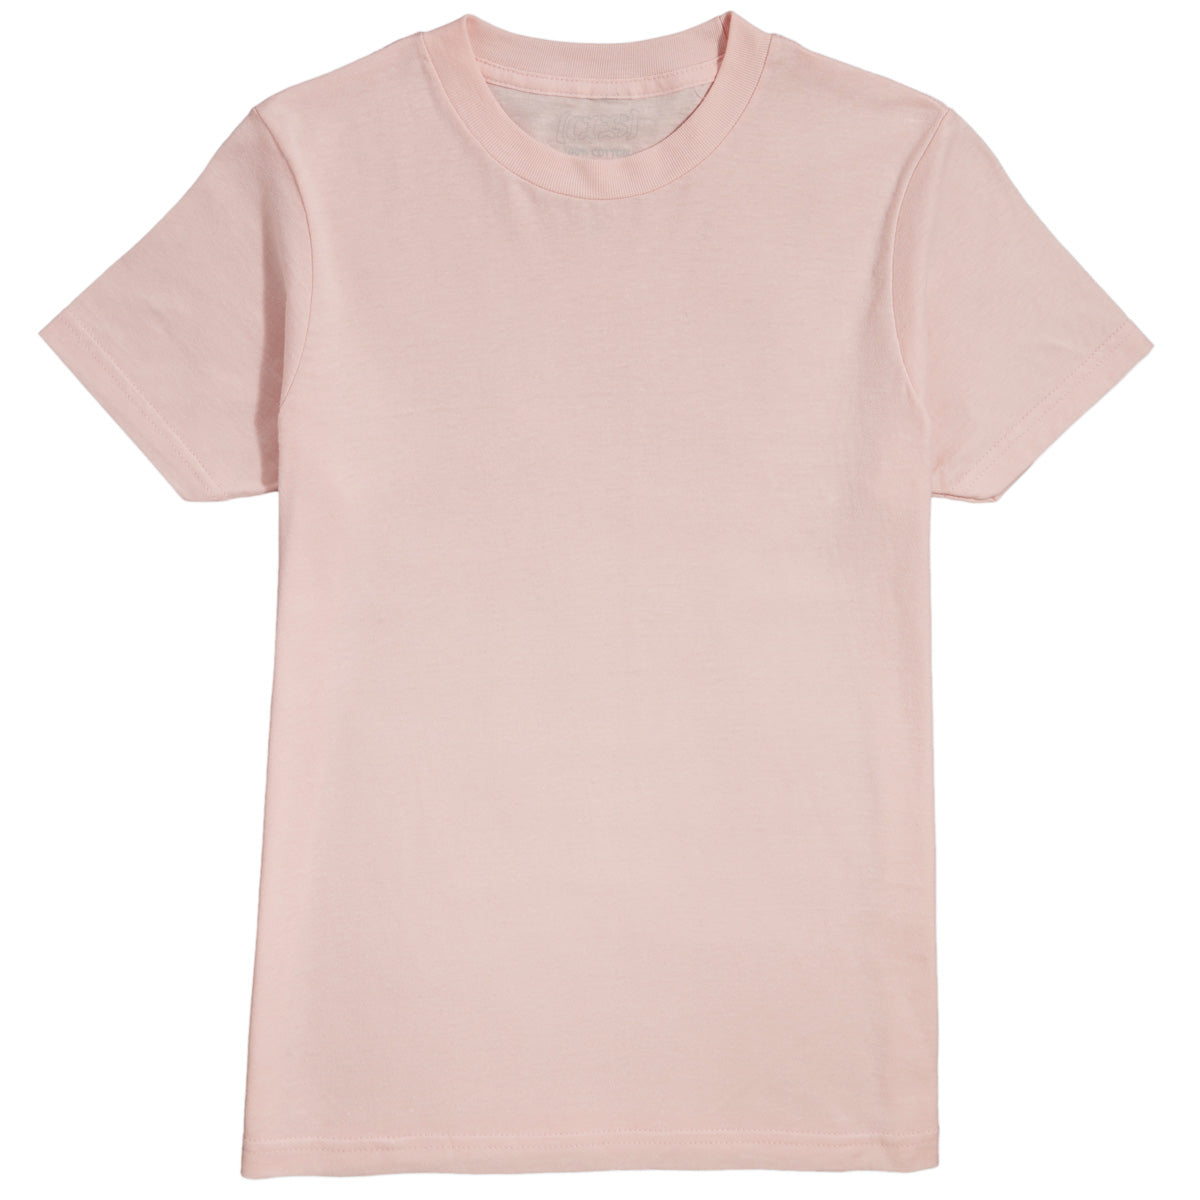 CCS Youth Basis T-Shirt - Pink image 1